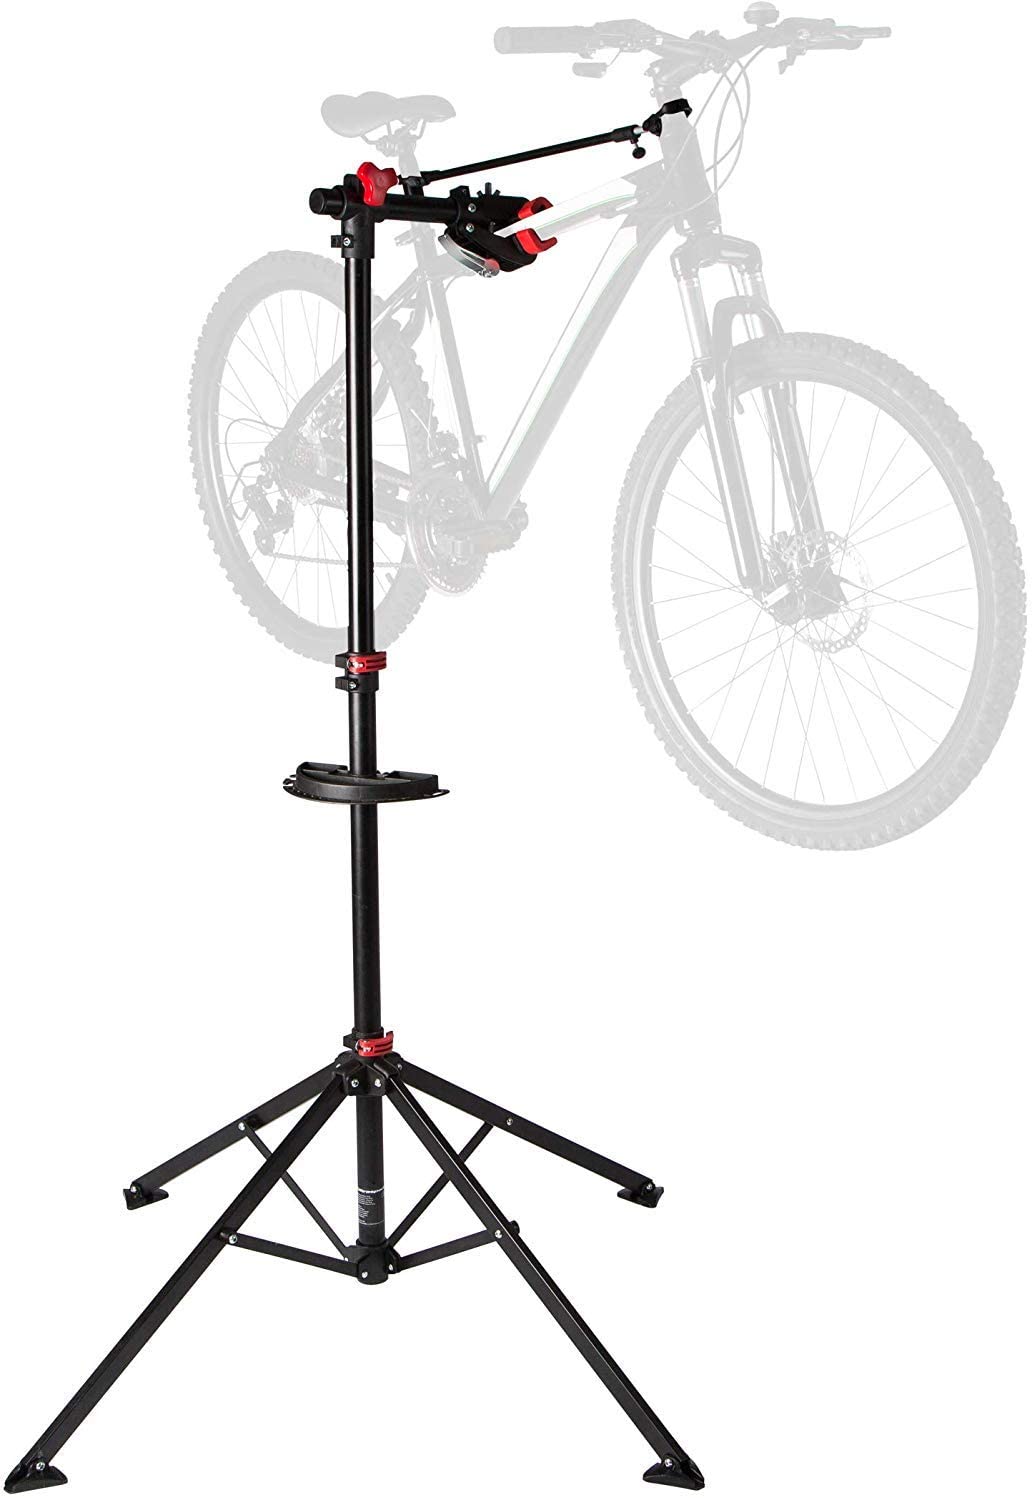 Ultrasport Fahrradmontageständer, robuster Fahrradständer, für Mountainbike und alle Fahrradarten bis 30 kg, inkl. Werkzeugschale+Magnetfach, 360° drehbar, lackschonender Schnellspann-Haltekralle